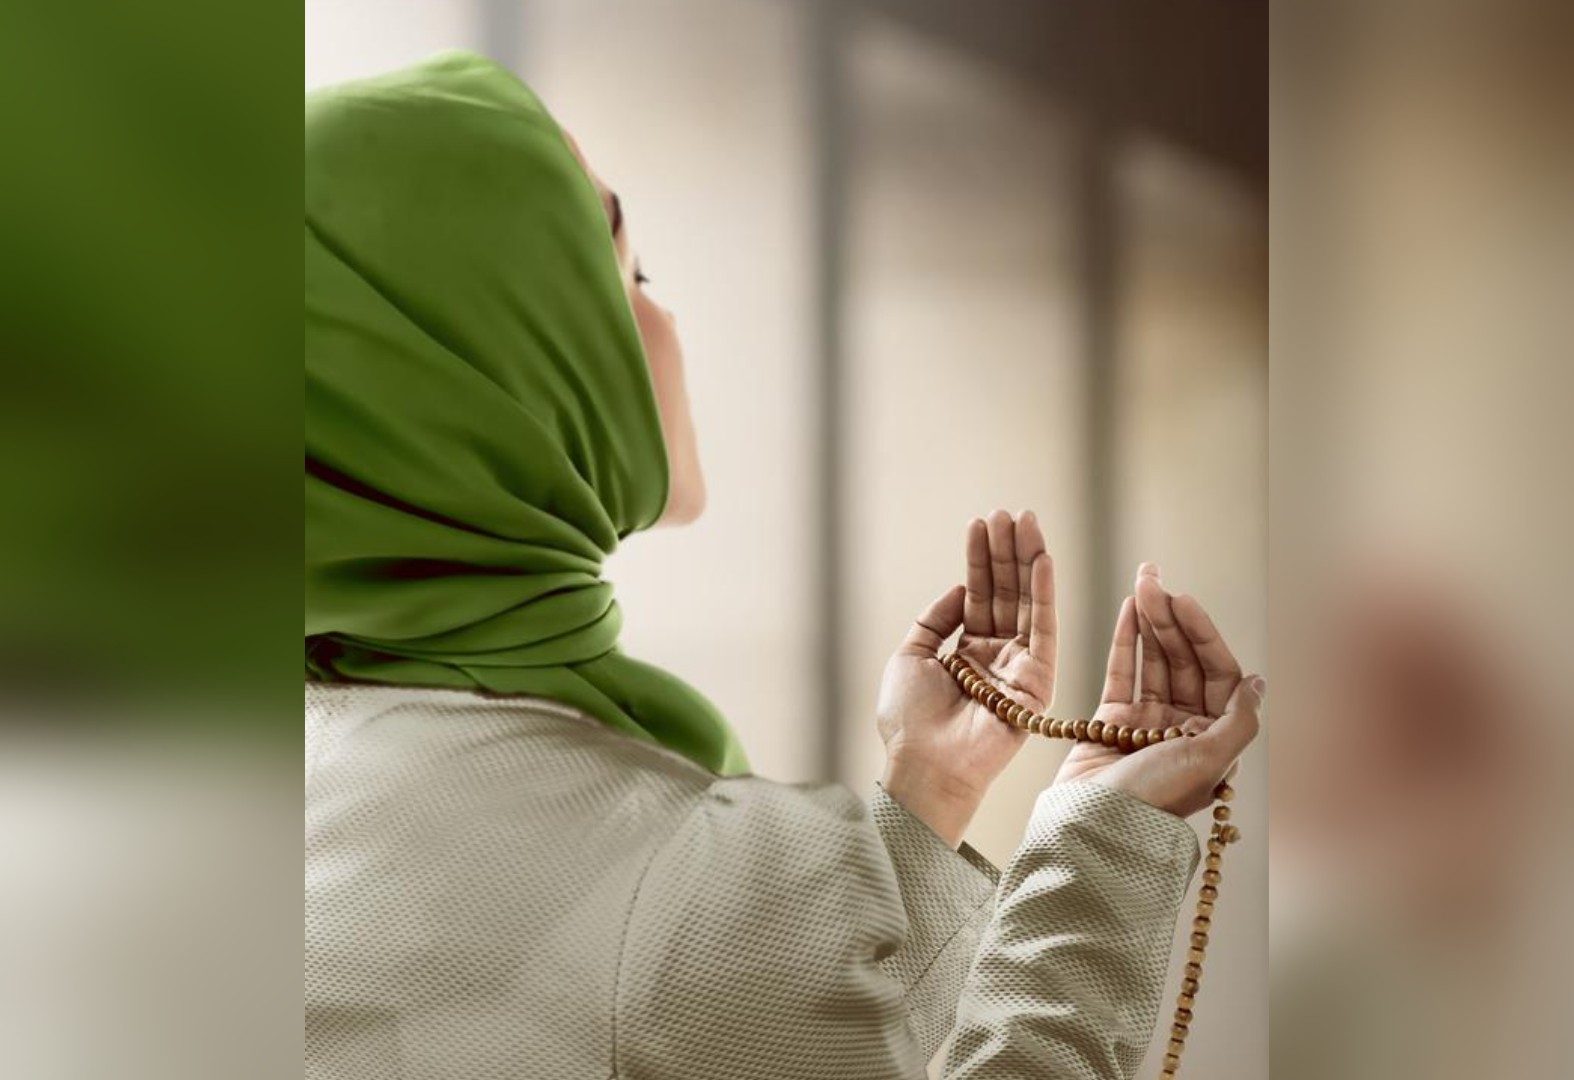 Muslimah berdoa, semoga terkabul. (Foto: Istimewa)